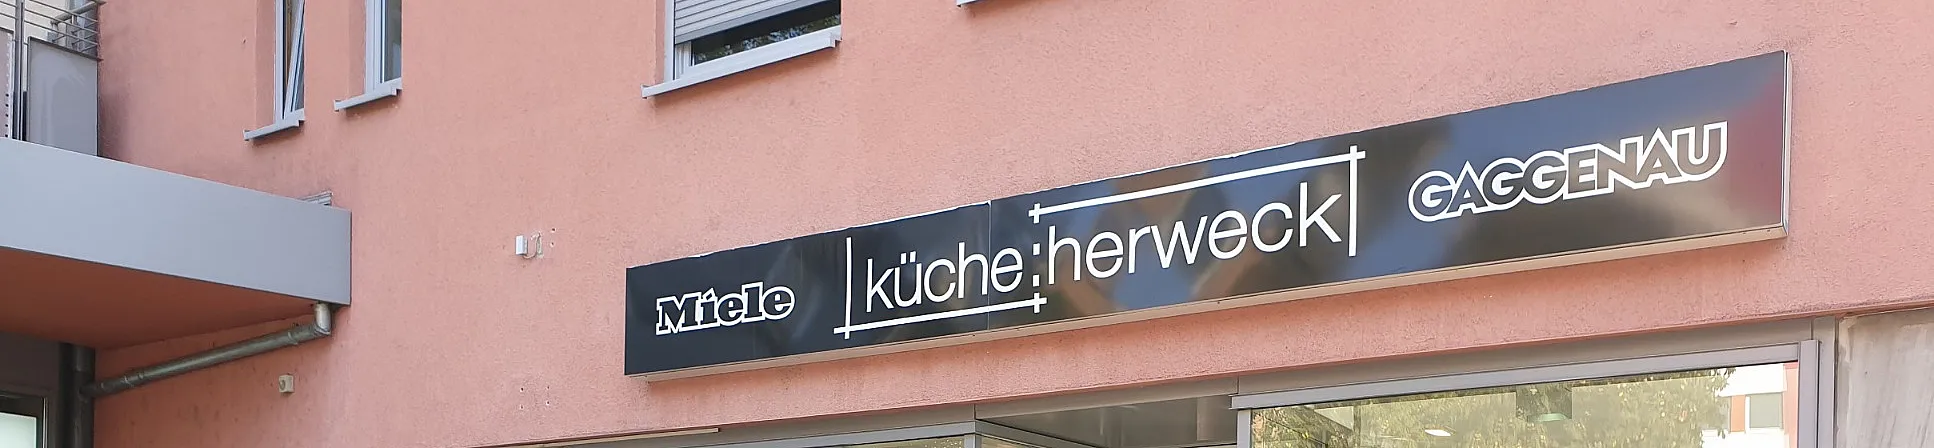 kueche-herweck-top-banner